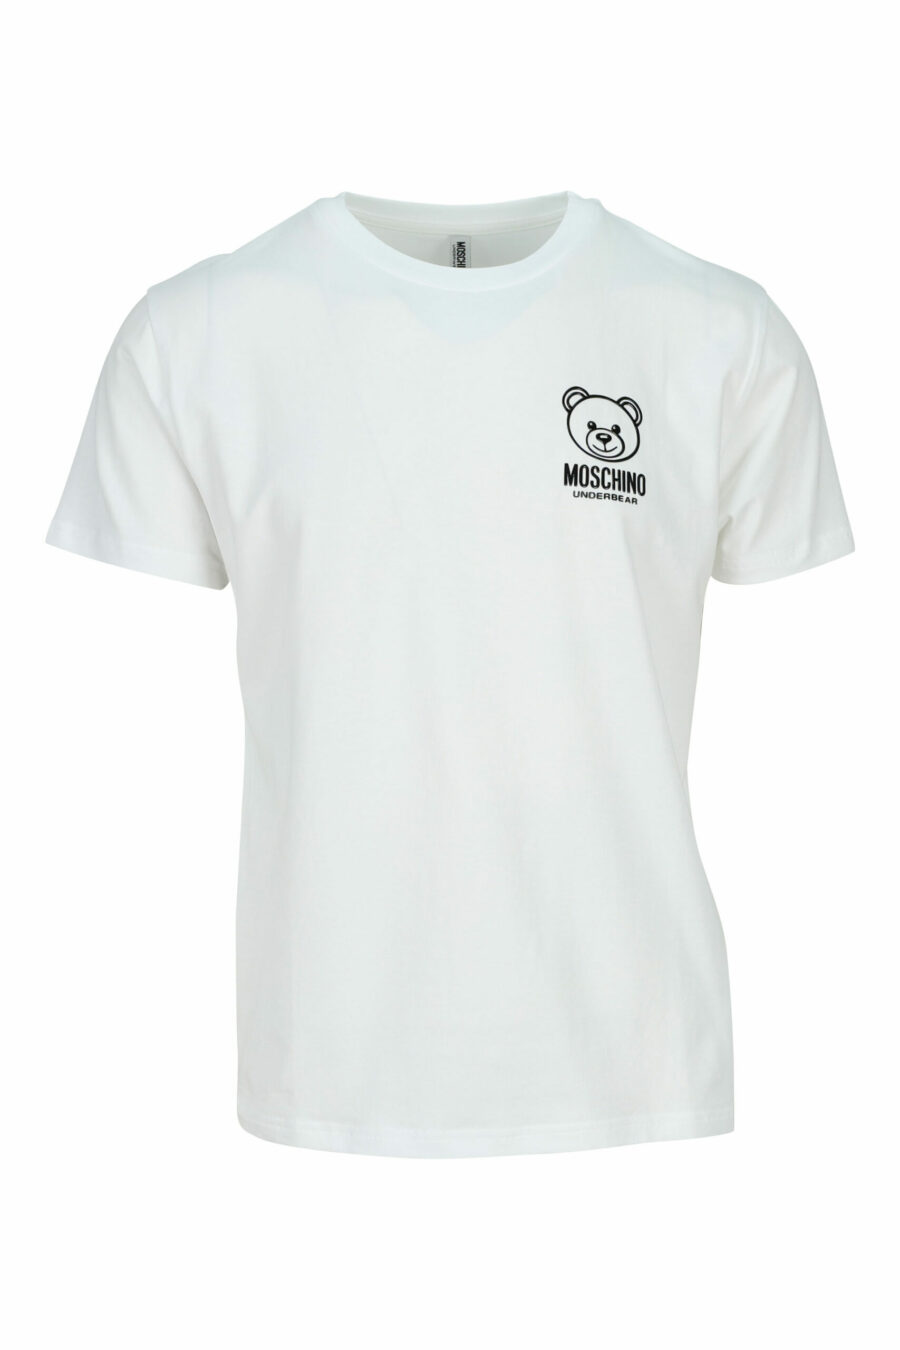 Camiseta blanca con minilogo oso "underbear" en goma negro - 667113602585 scaled